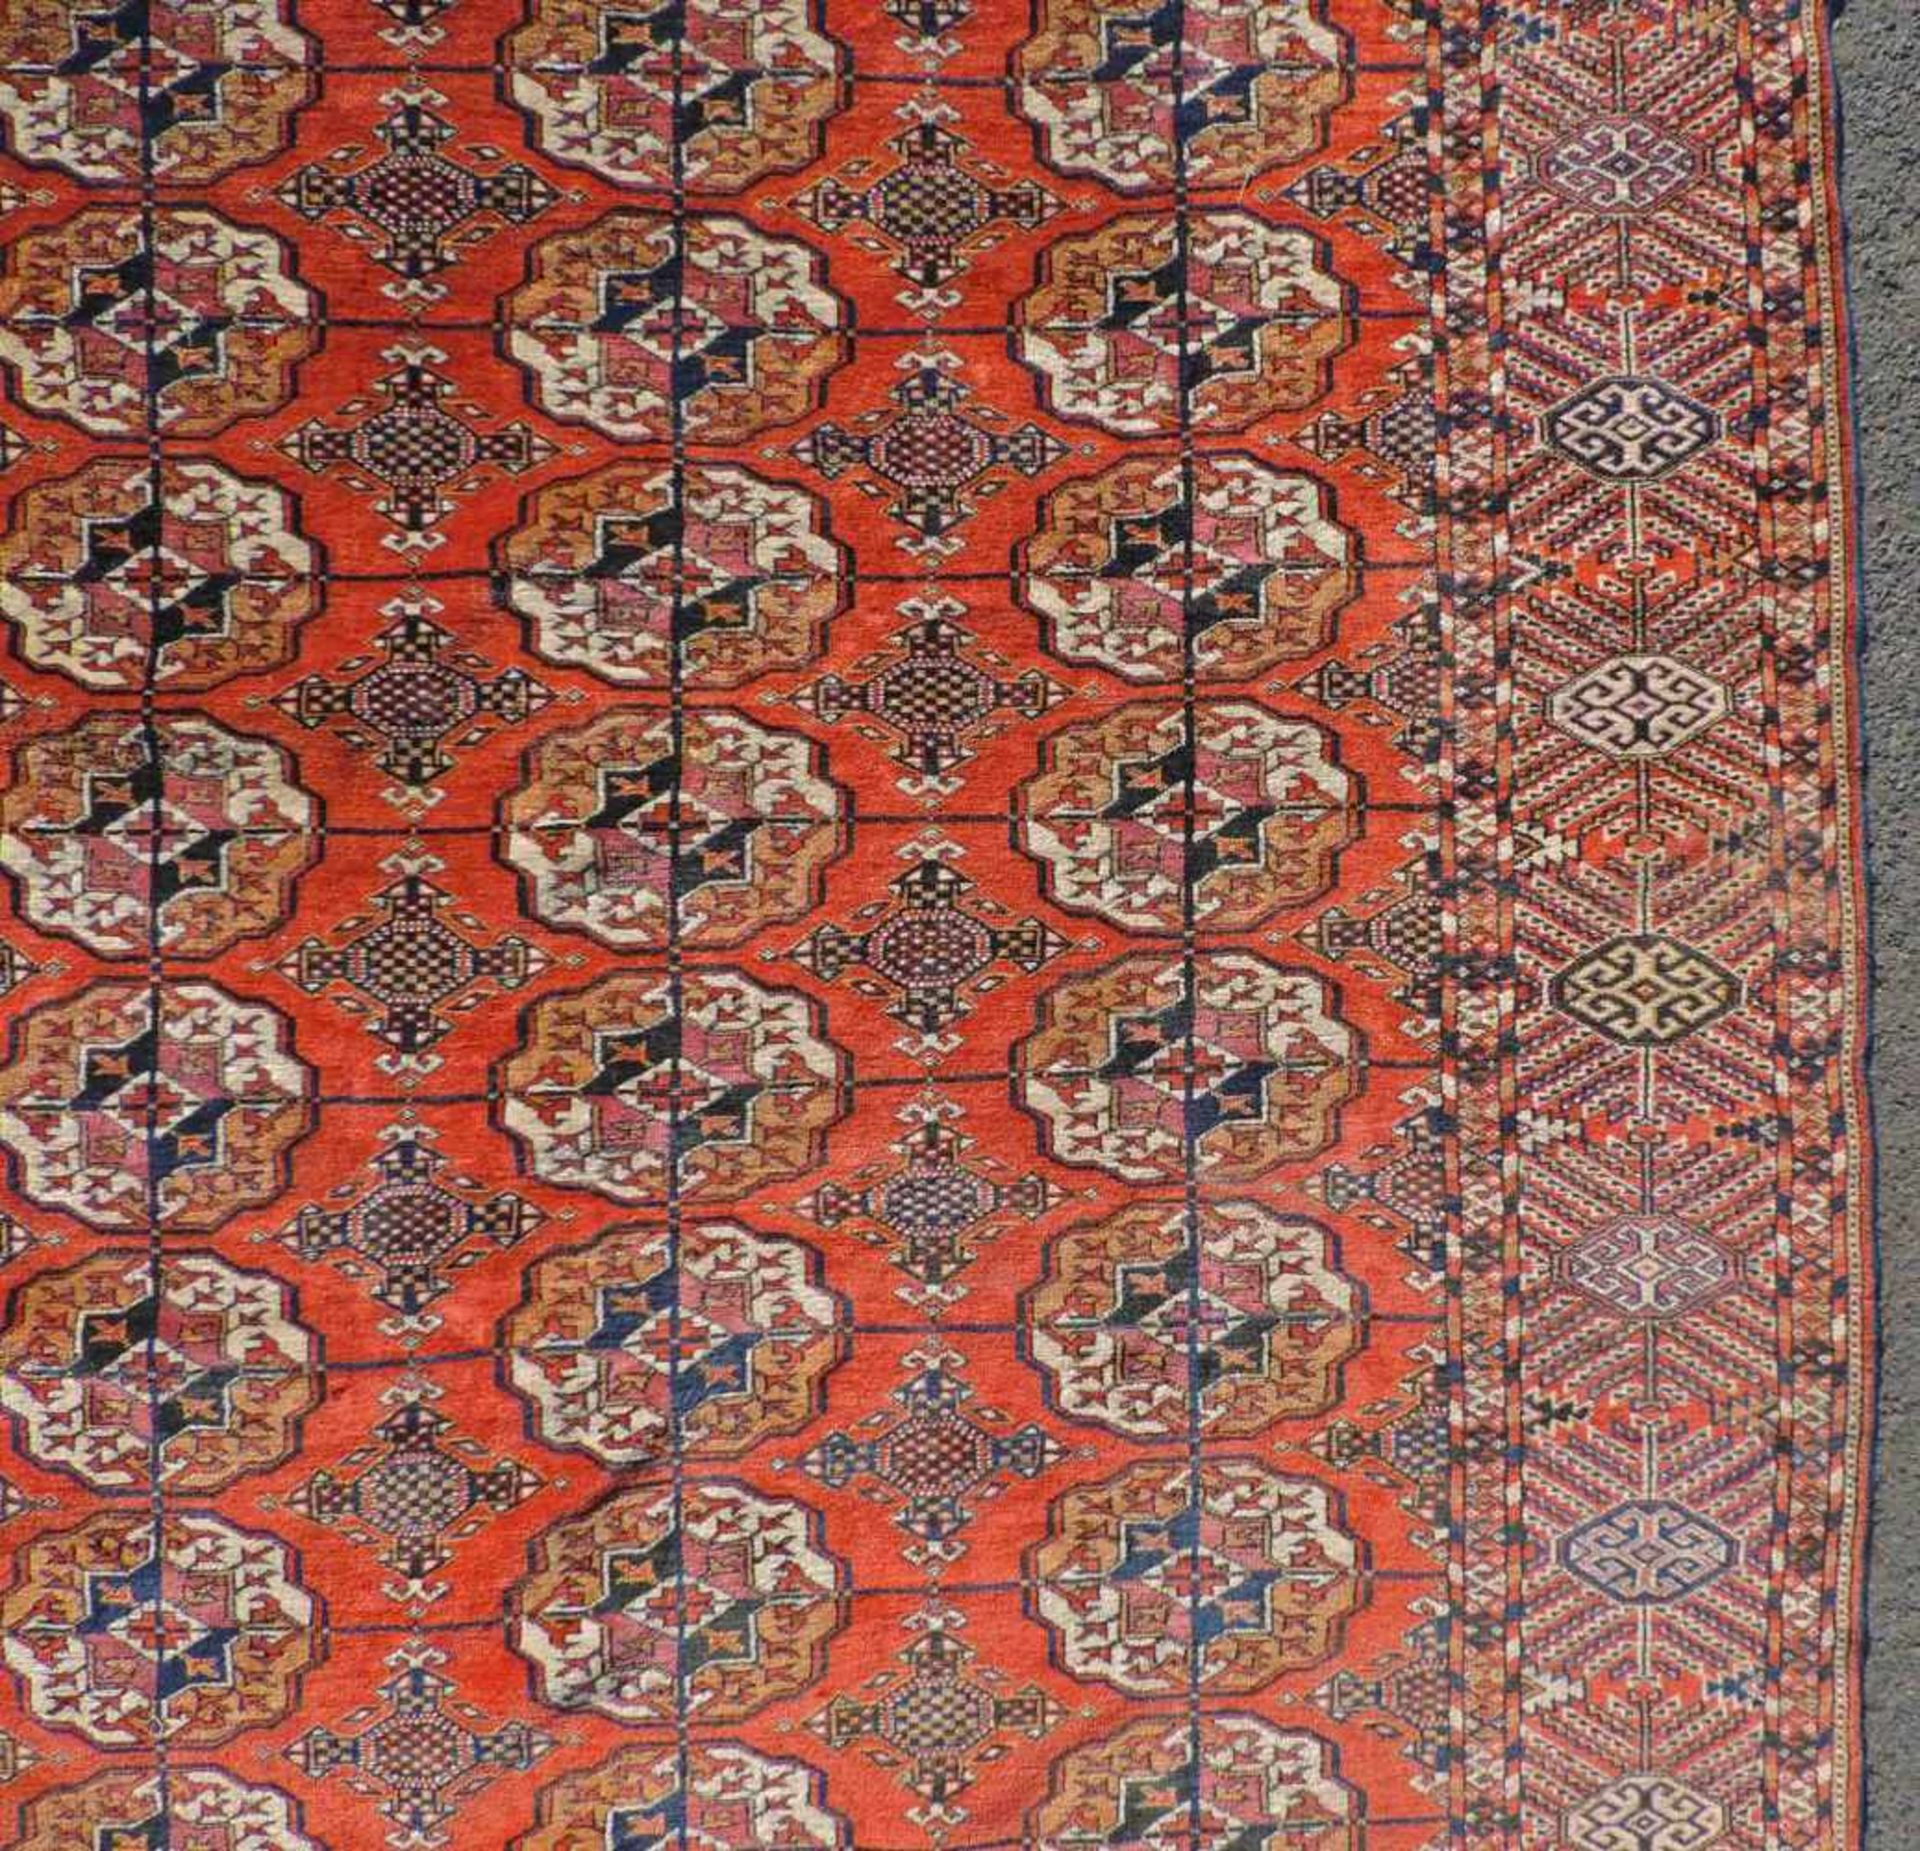 Jomud Stammesteppich. Iran. Antik, um 1910.309 cm x 210 cm. Handgeknüpft. Wolle auf Wolle. Göklan - Image 5 of 8